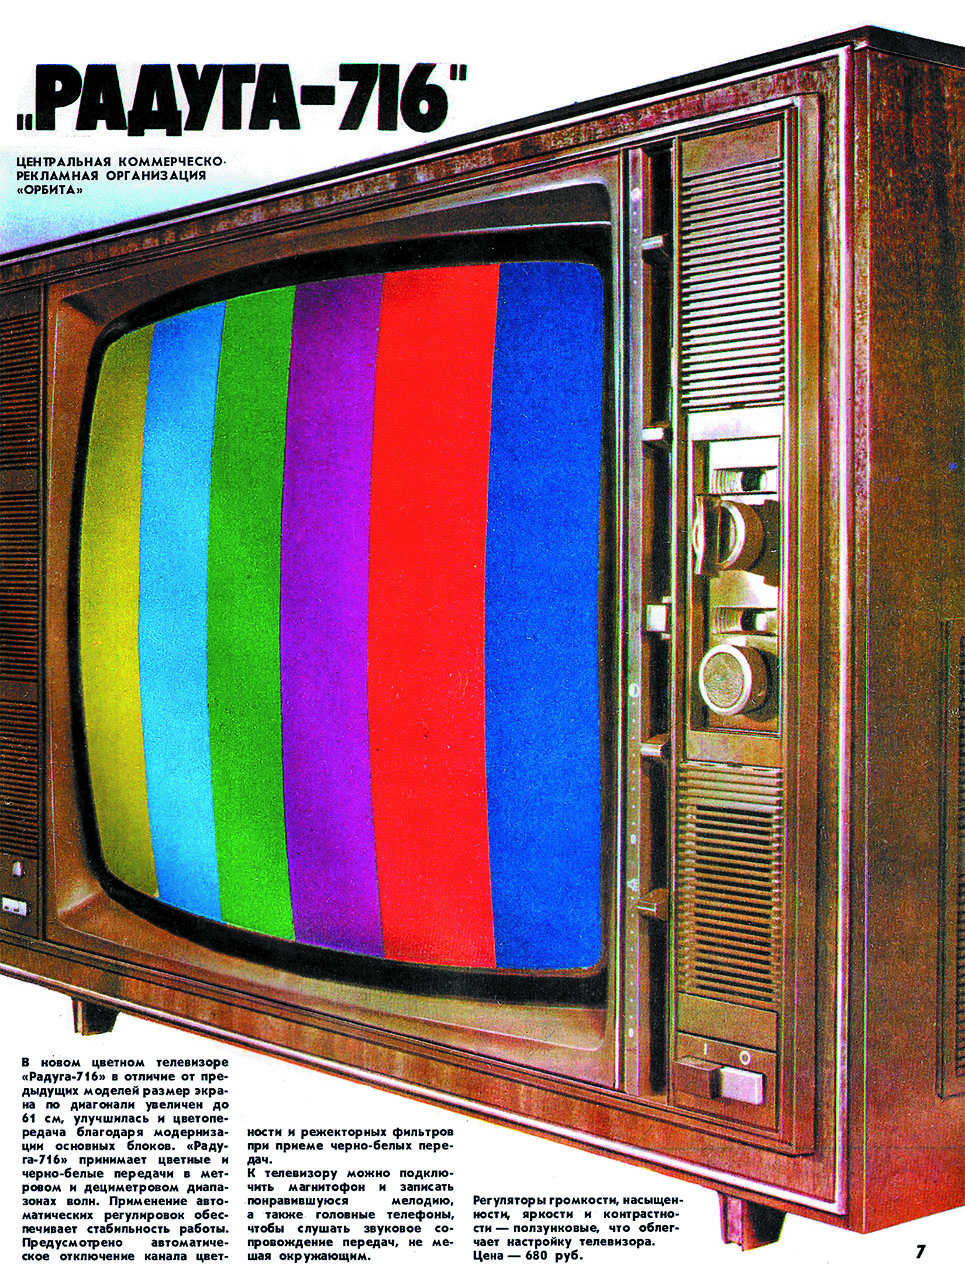 Реклама цветного телевизора «Радуга-716». 1977 г.